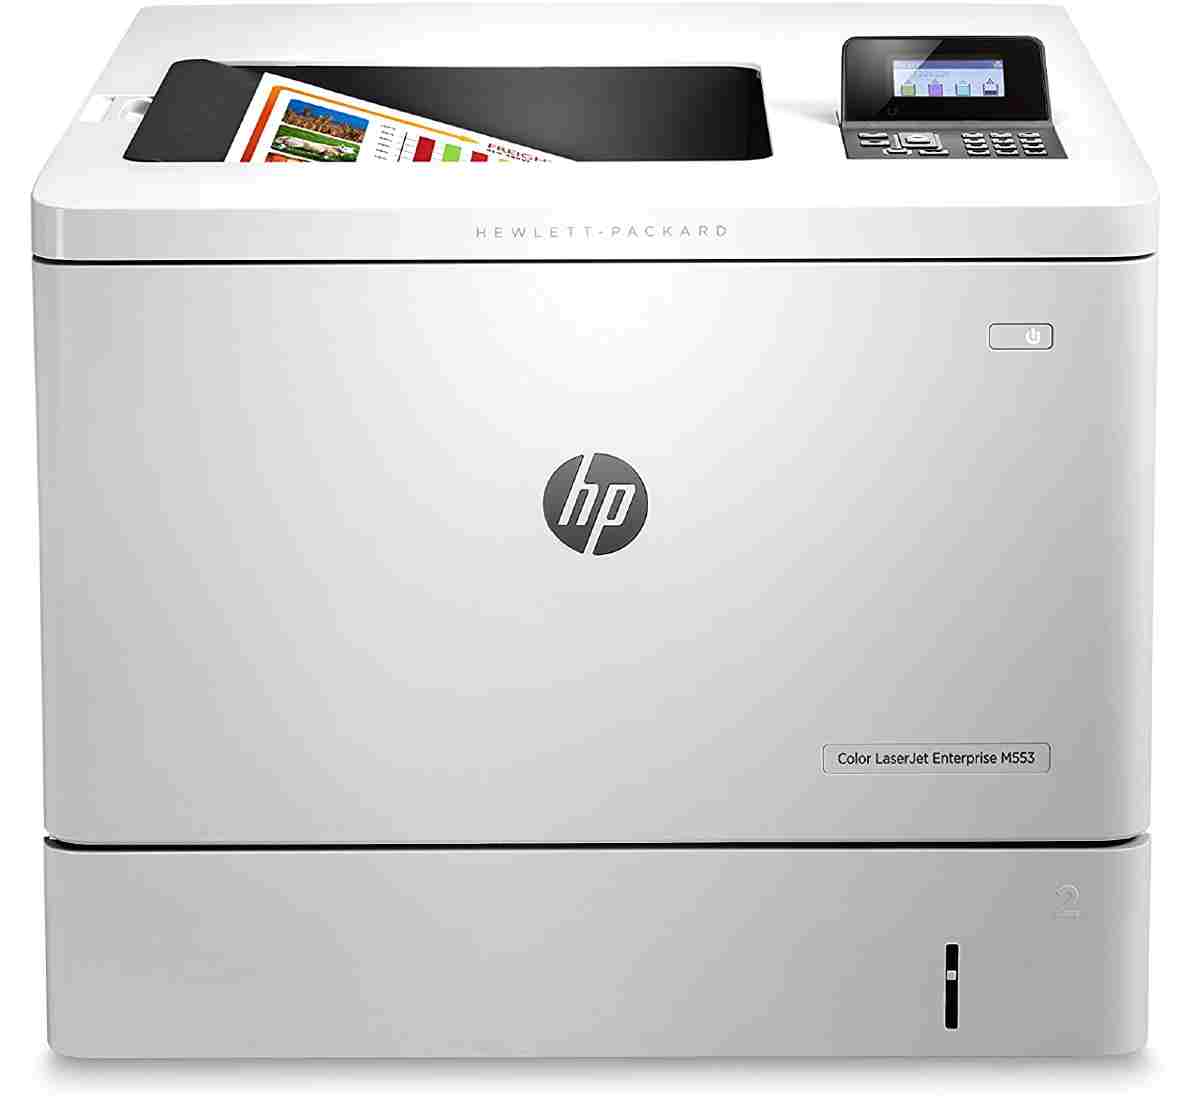 HP LaserJet M553dn is a color laser printer for Mac